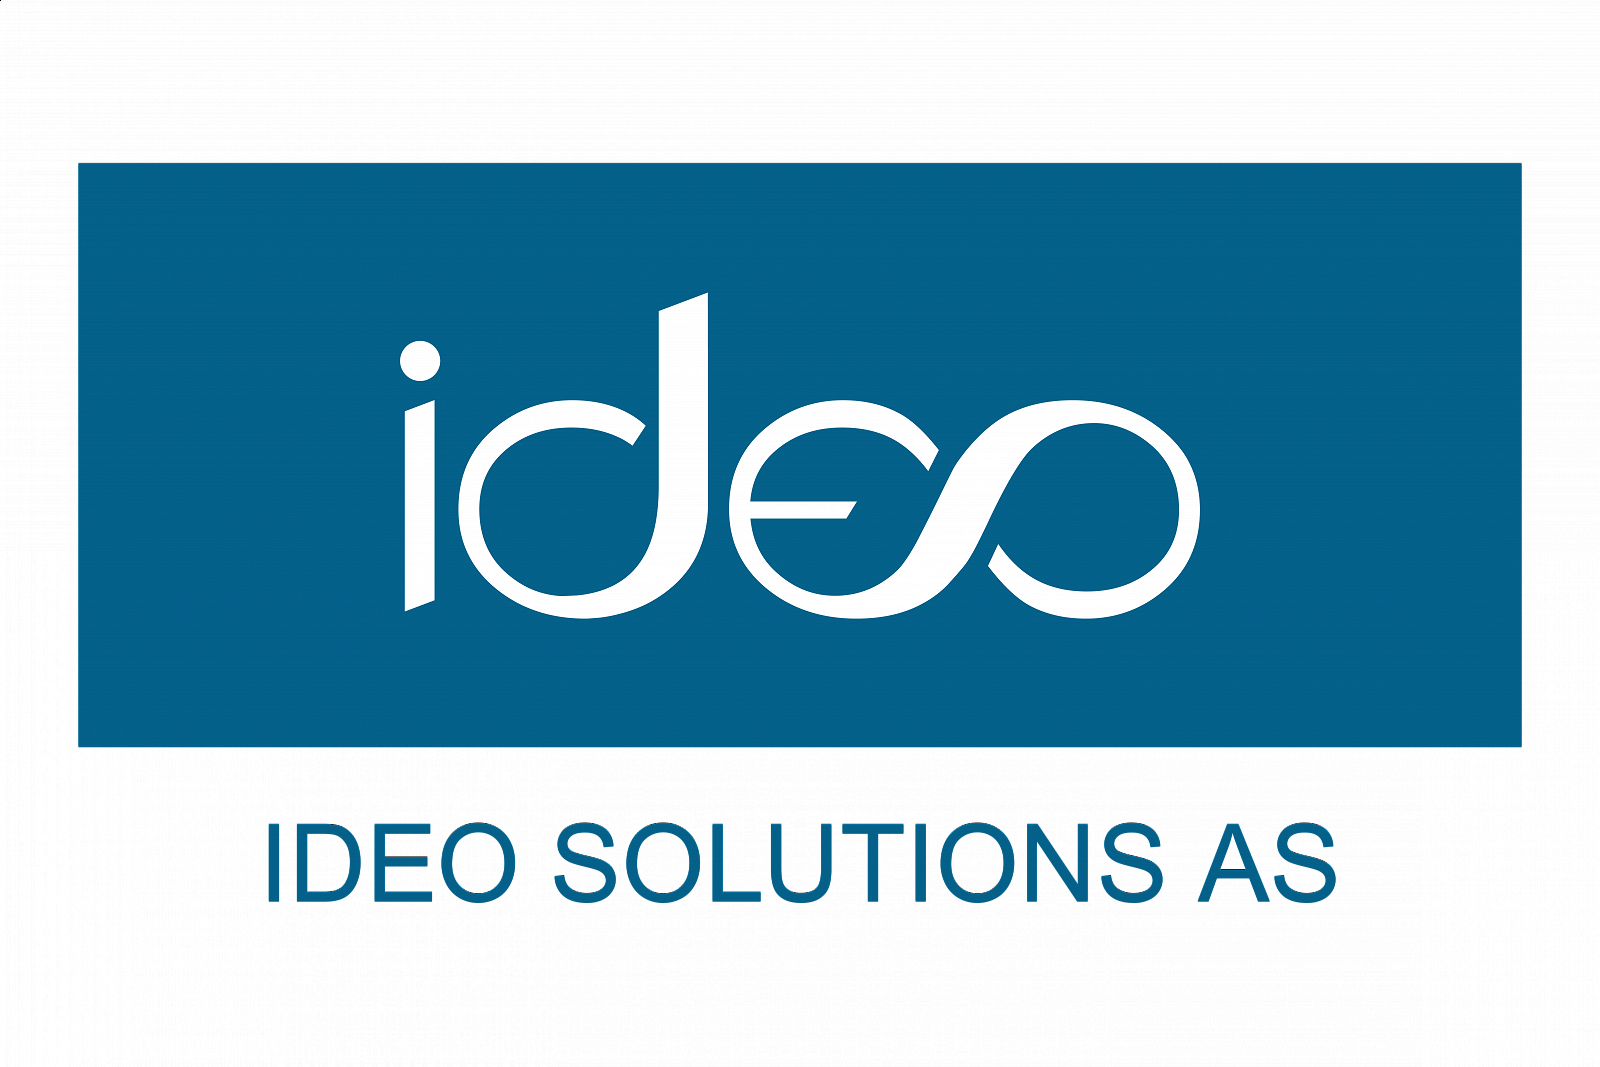 logo_solutions_ideo_kolor_web-01.png [617.82 KB]